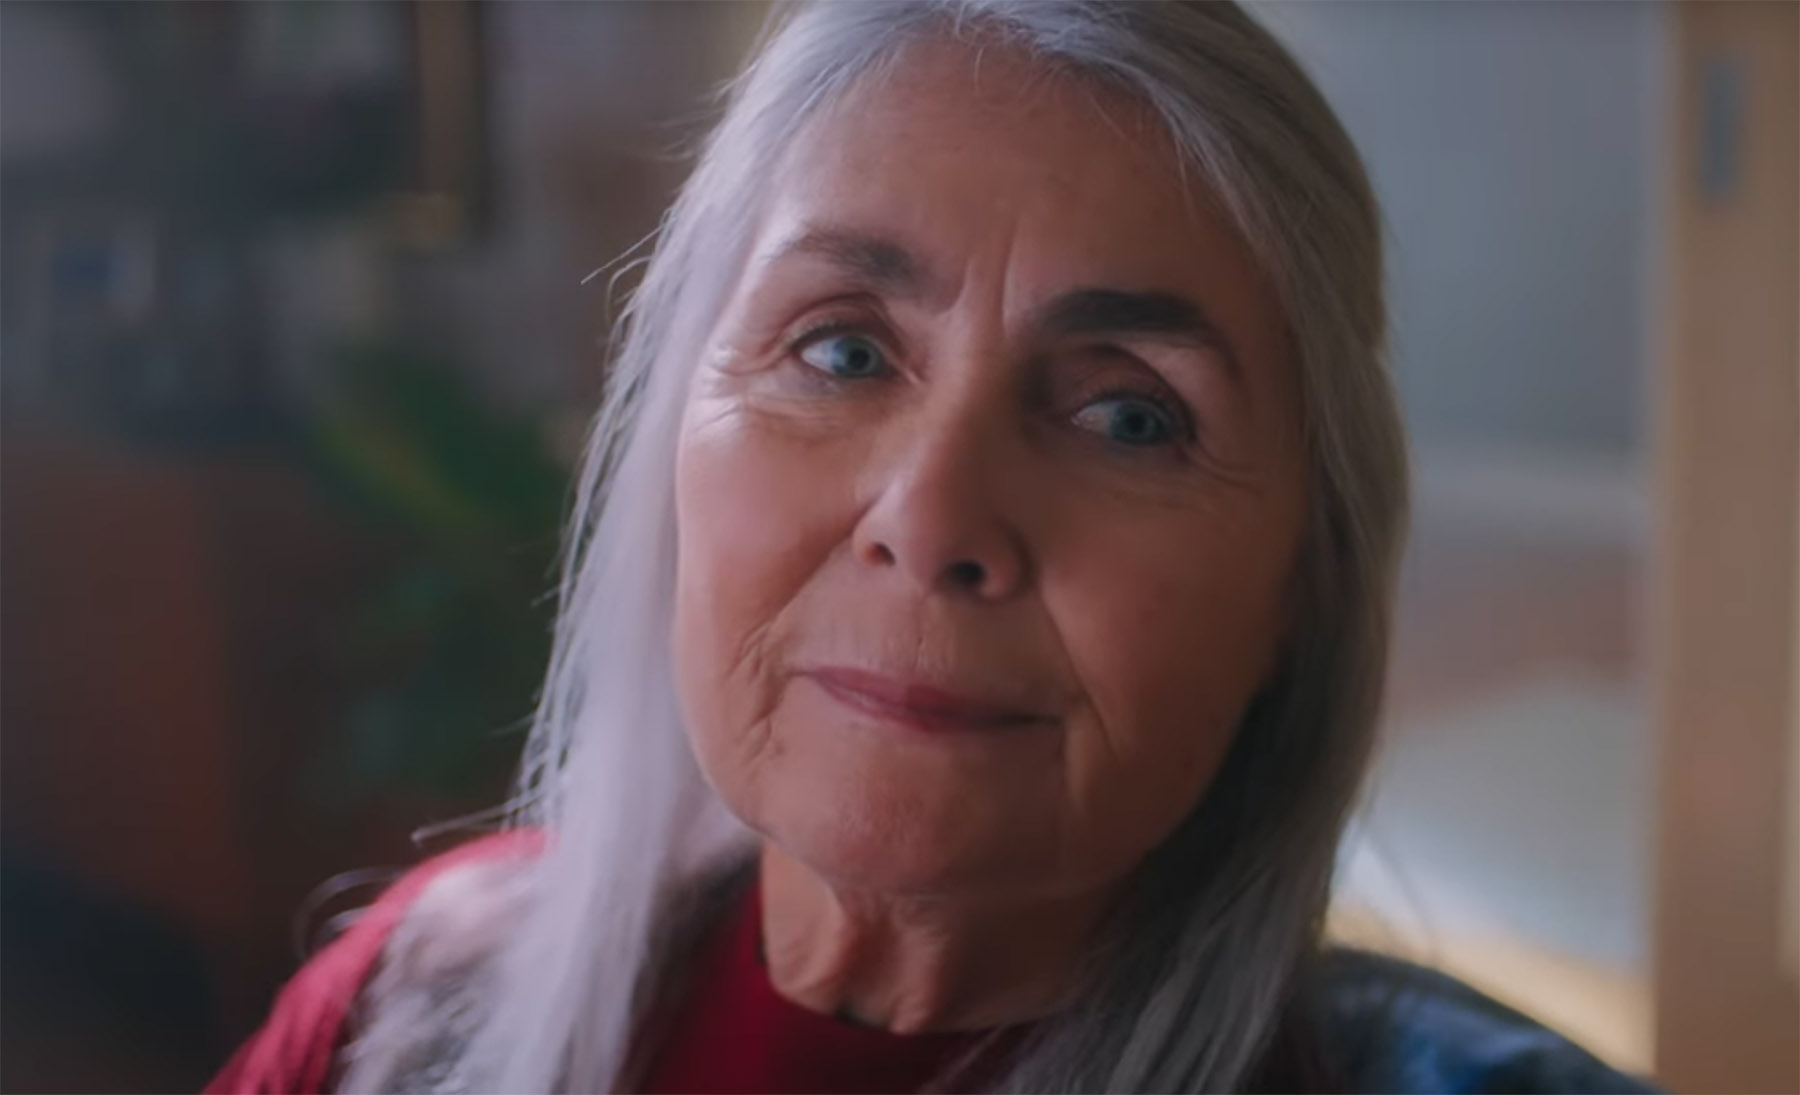 Werbespot der ABDA für pharmazeutische Dienstleistungen. Screenshot zeigt ältere Frau, leicht lächelnd nach rechts schauend